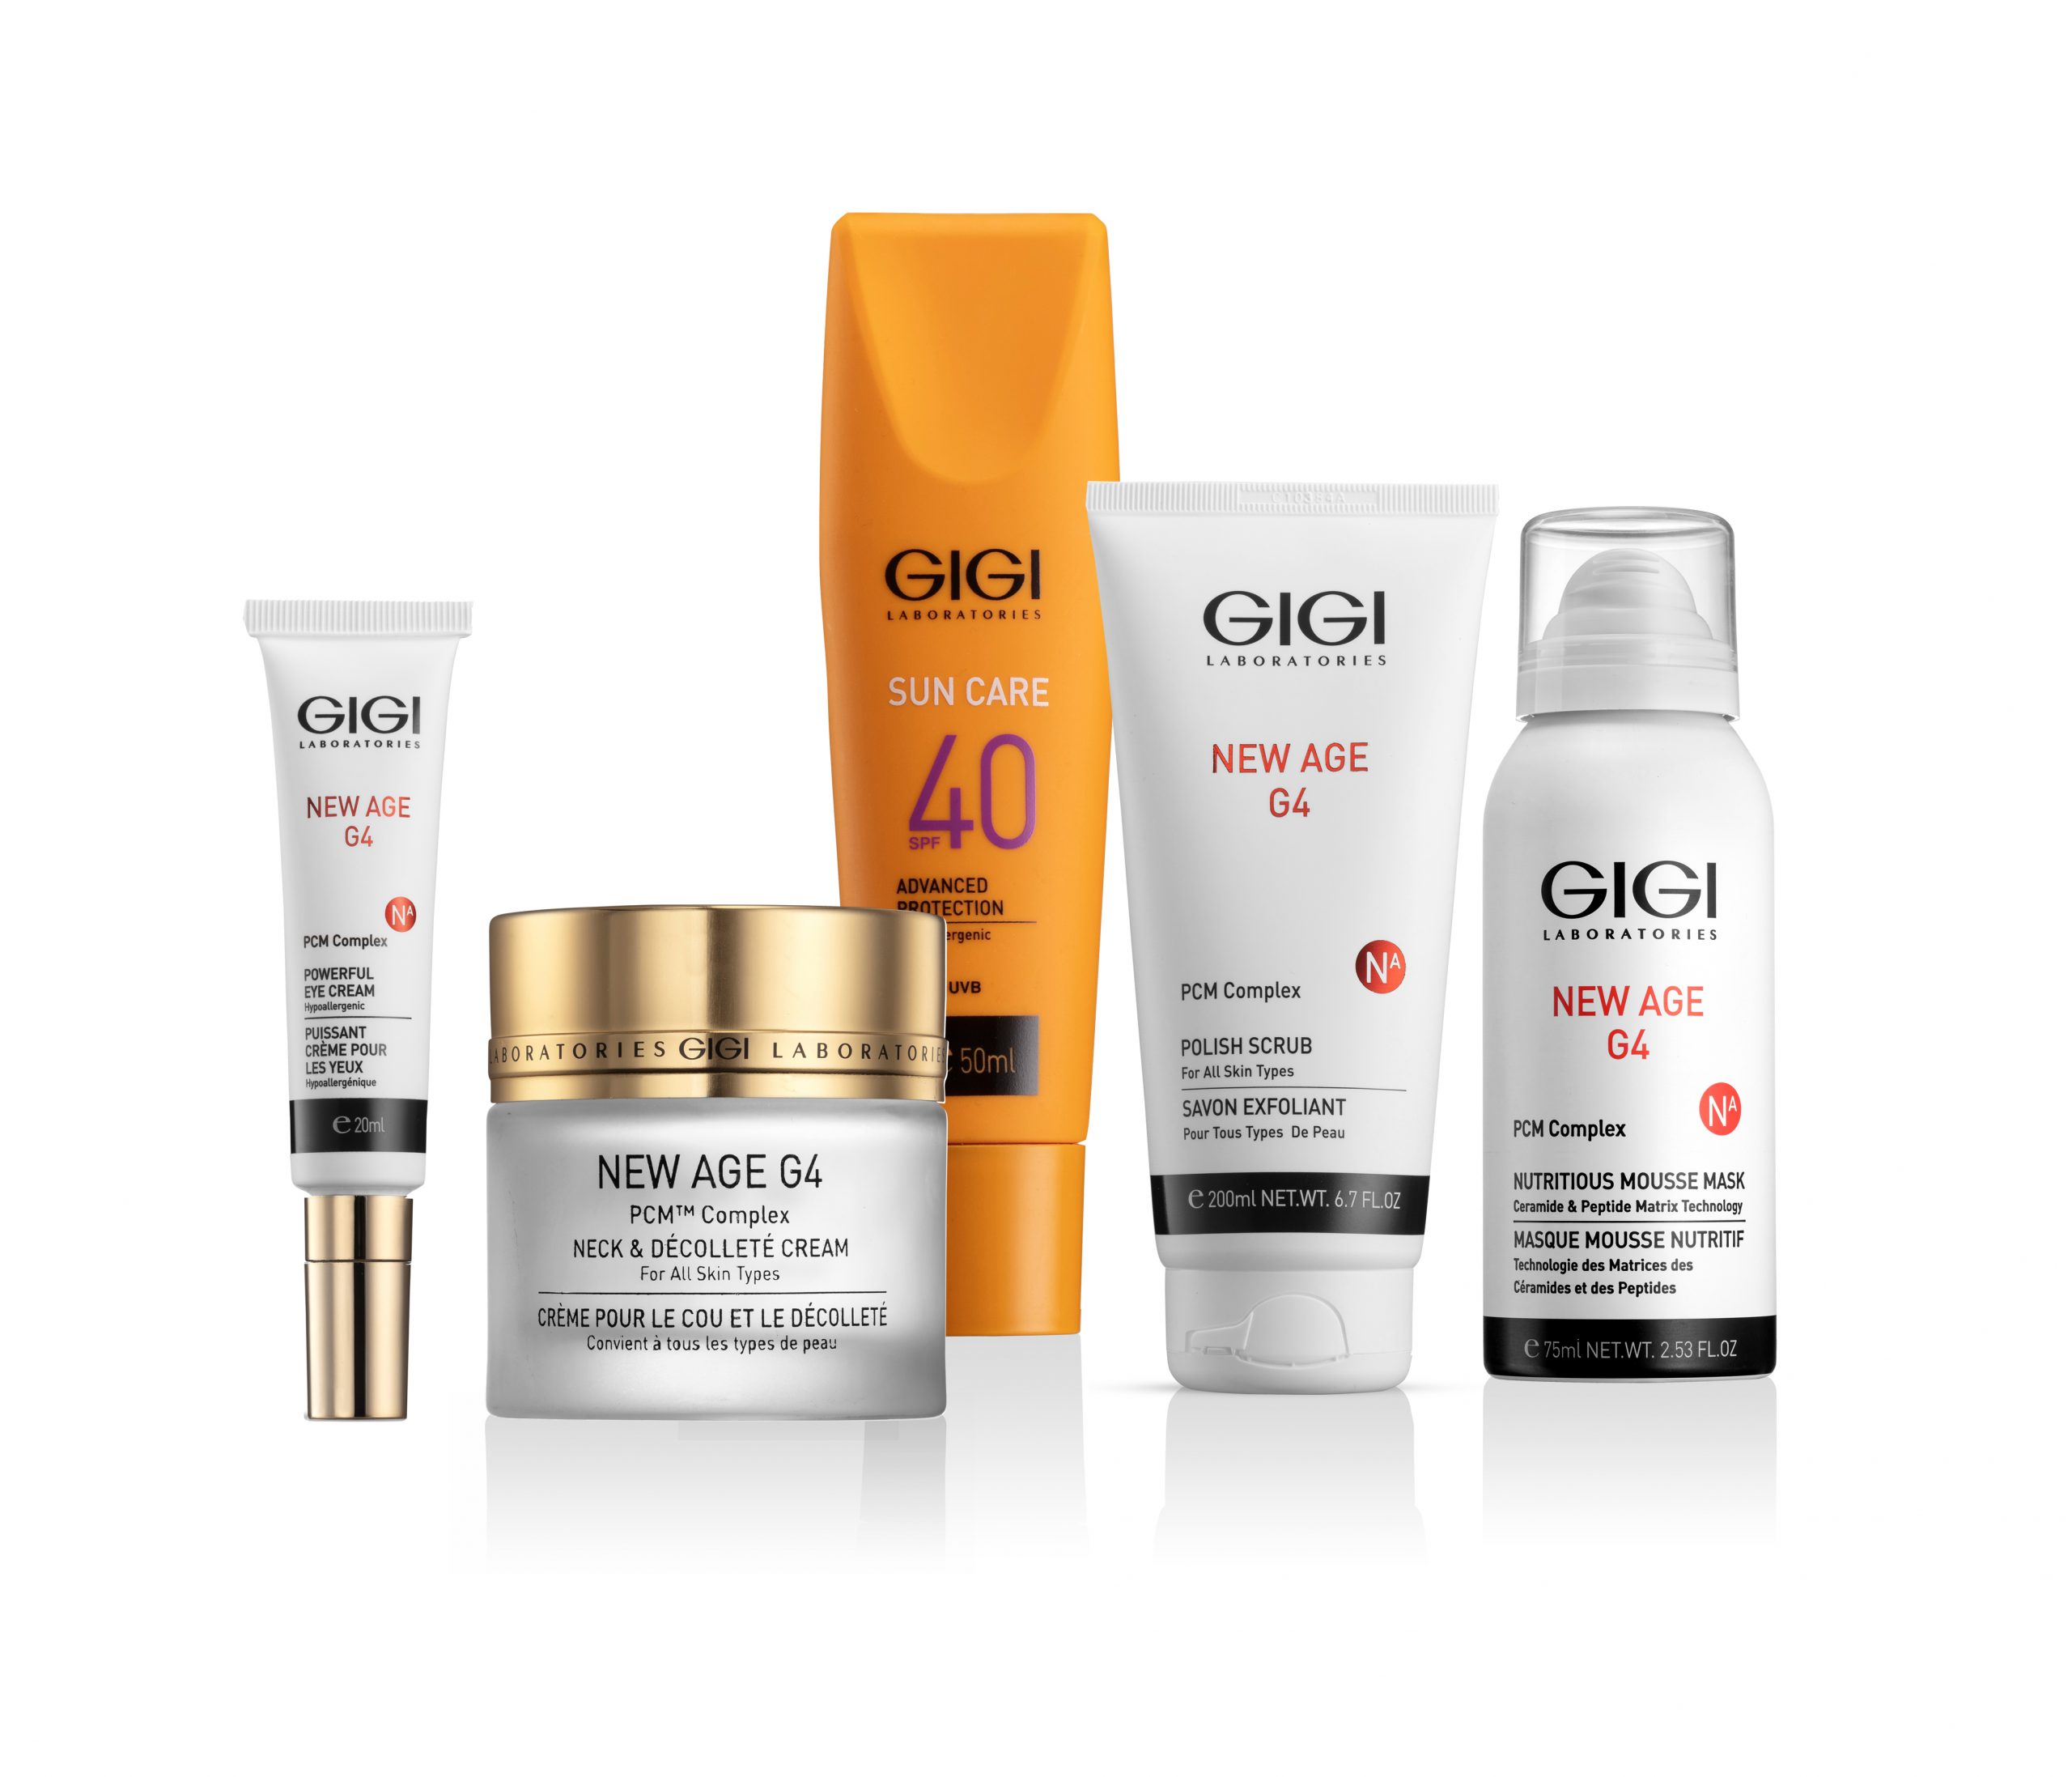 Рекомендации по уходу за кожей от ведущих специалистов лаборатории GIGI